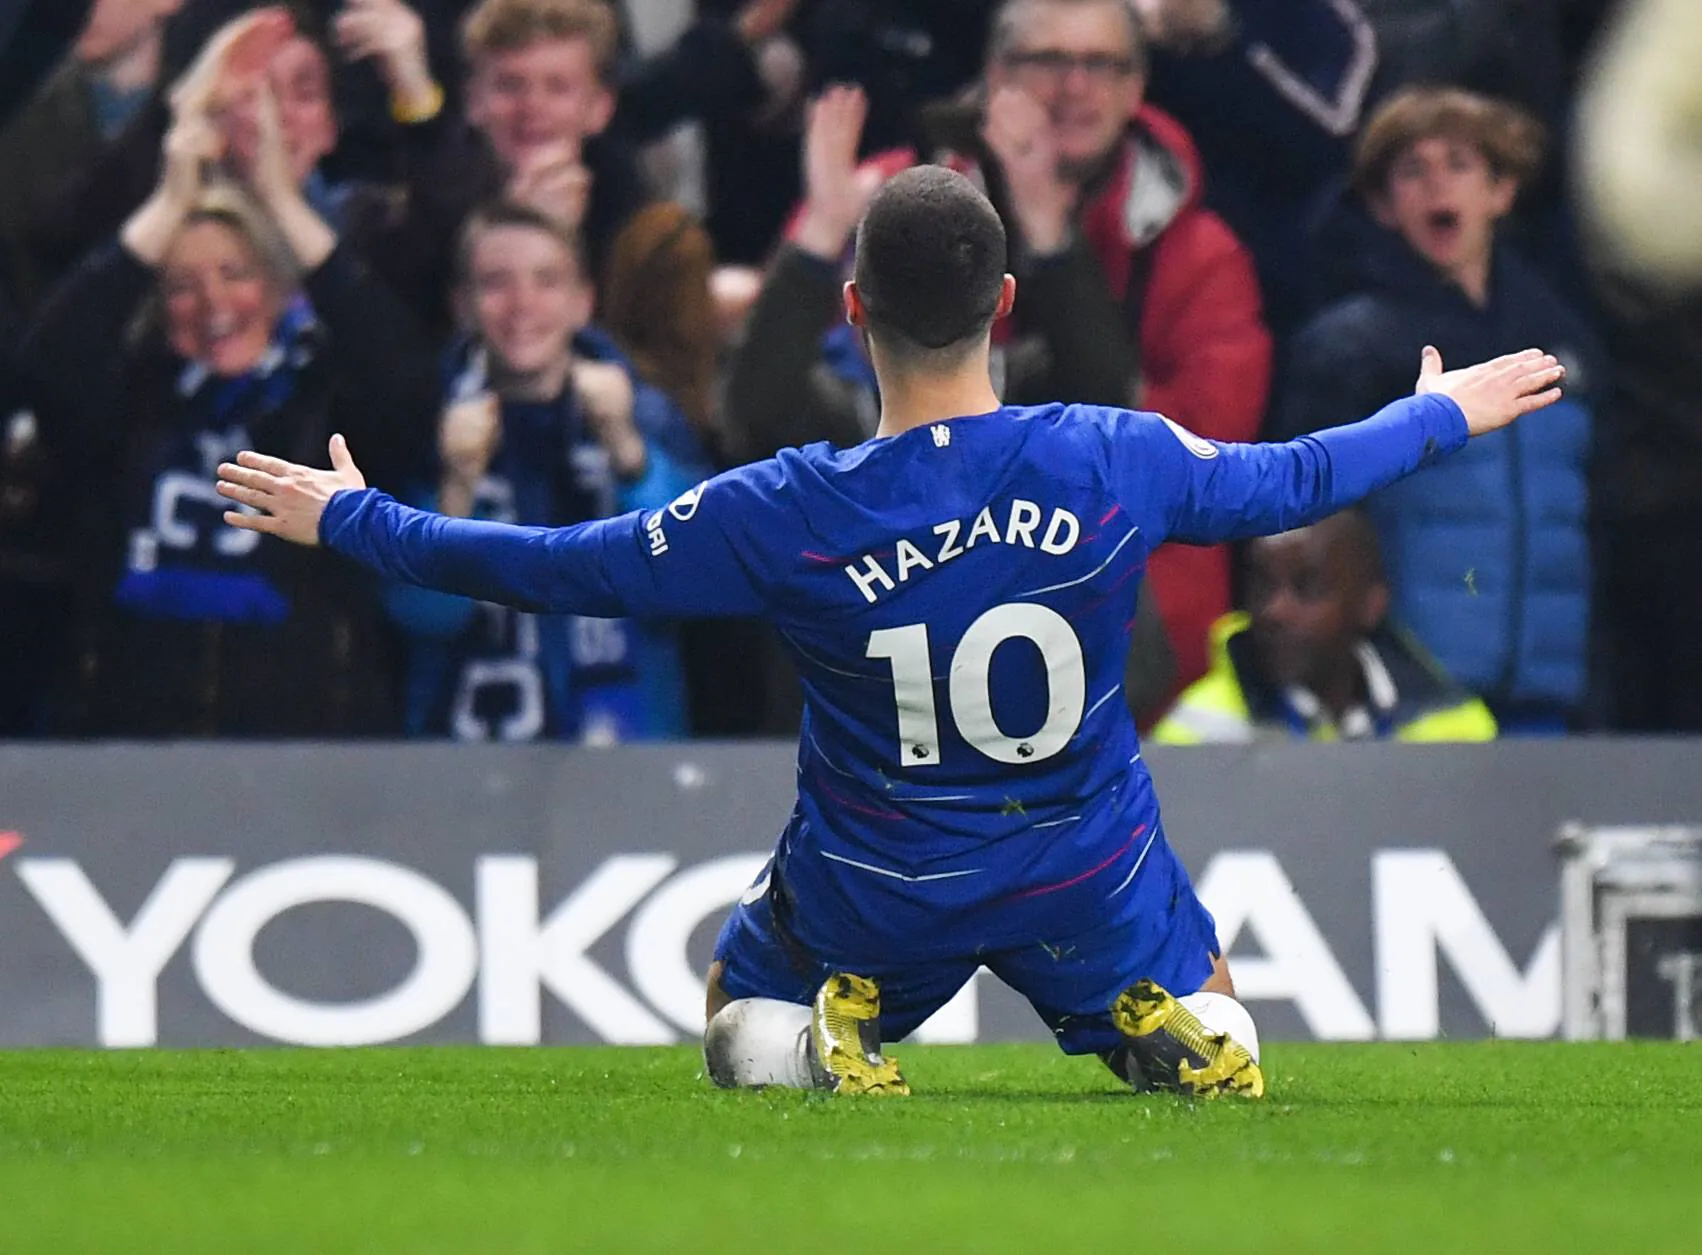 Chelsea Legend Eden Hazard